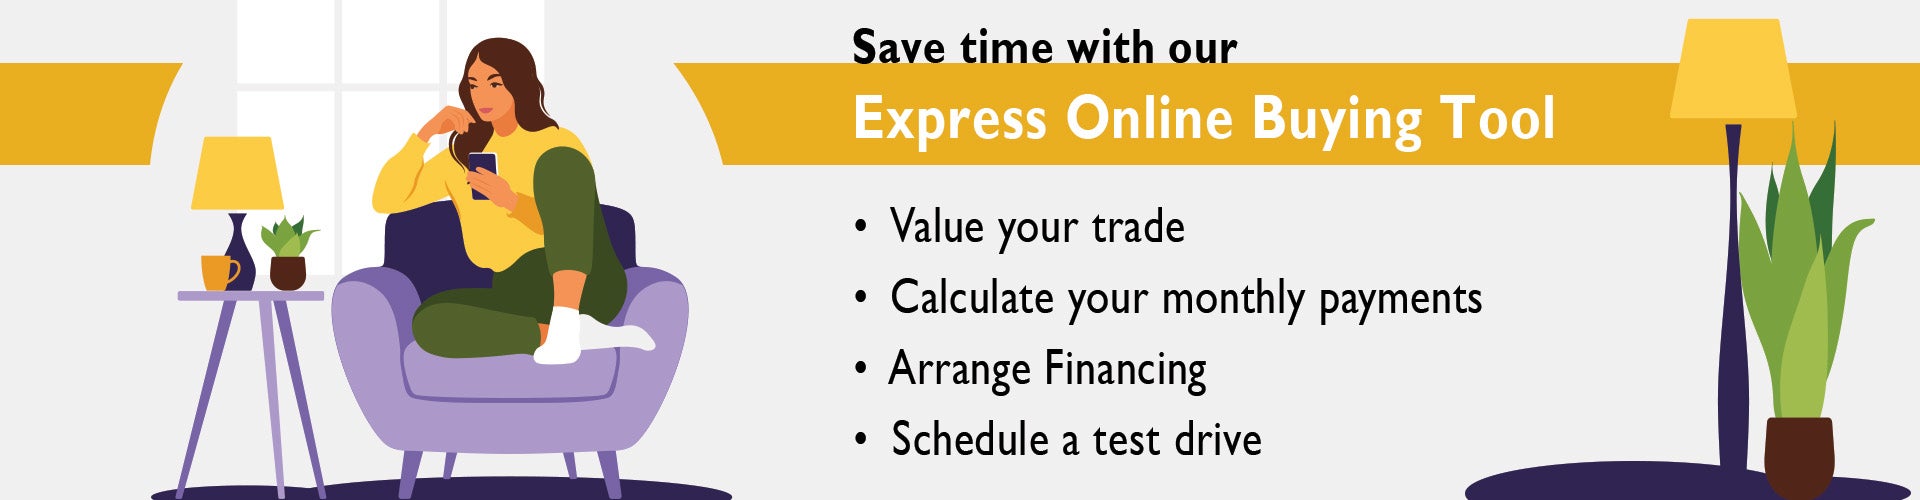 Express Online Buying Tool